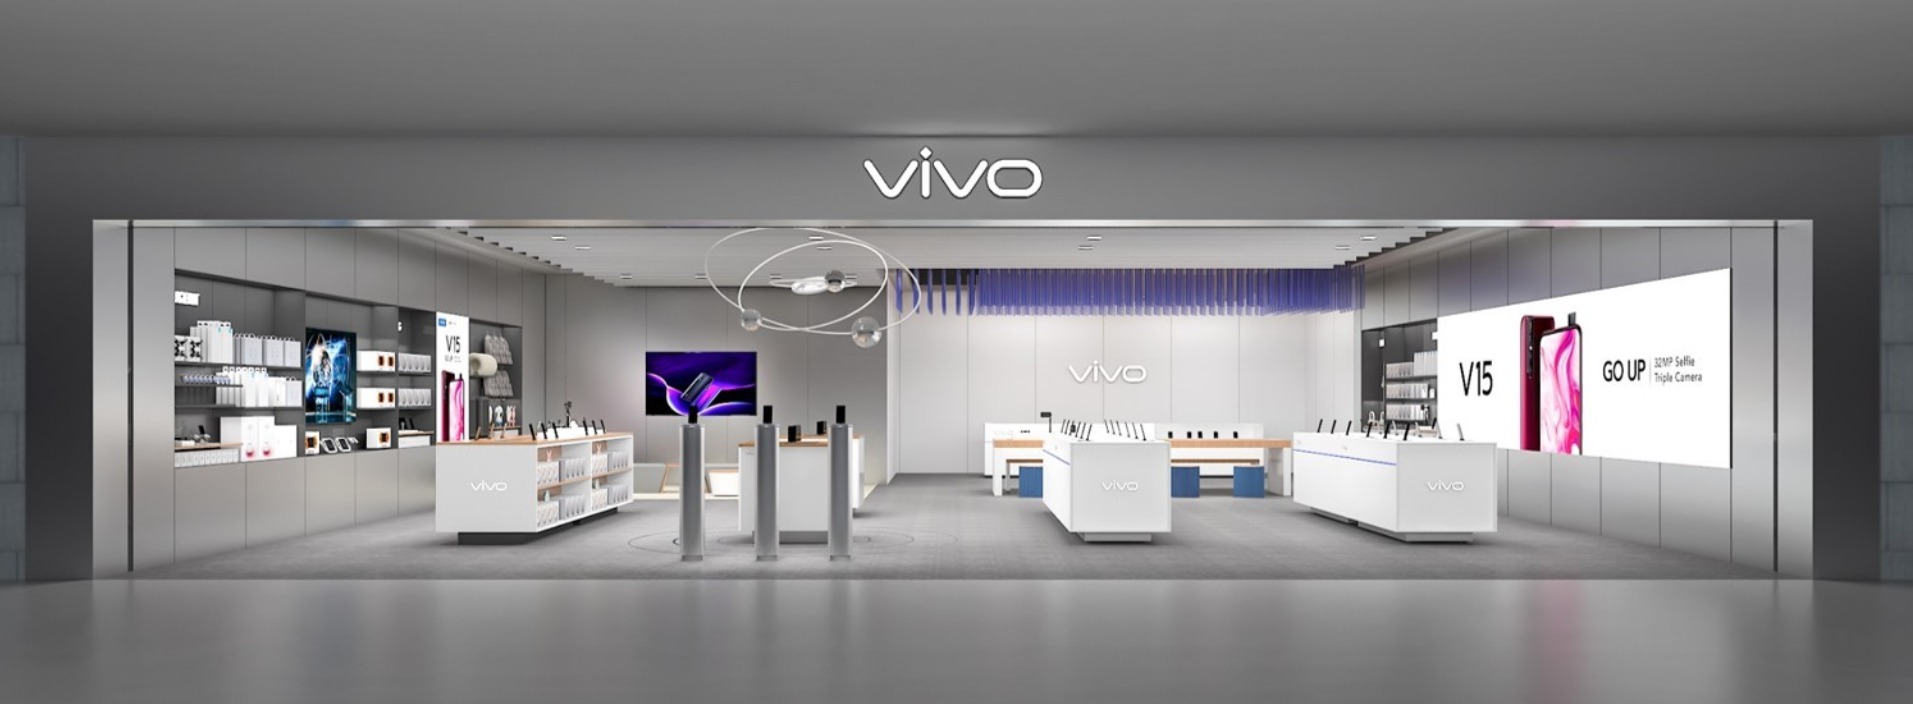 vivo smart phone branding store